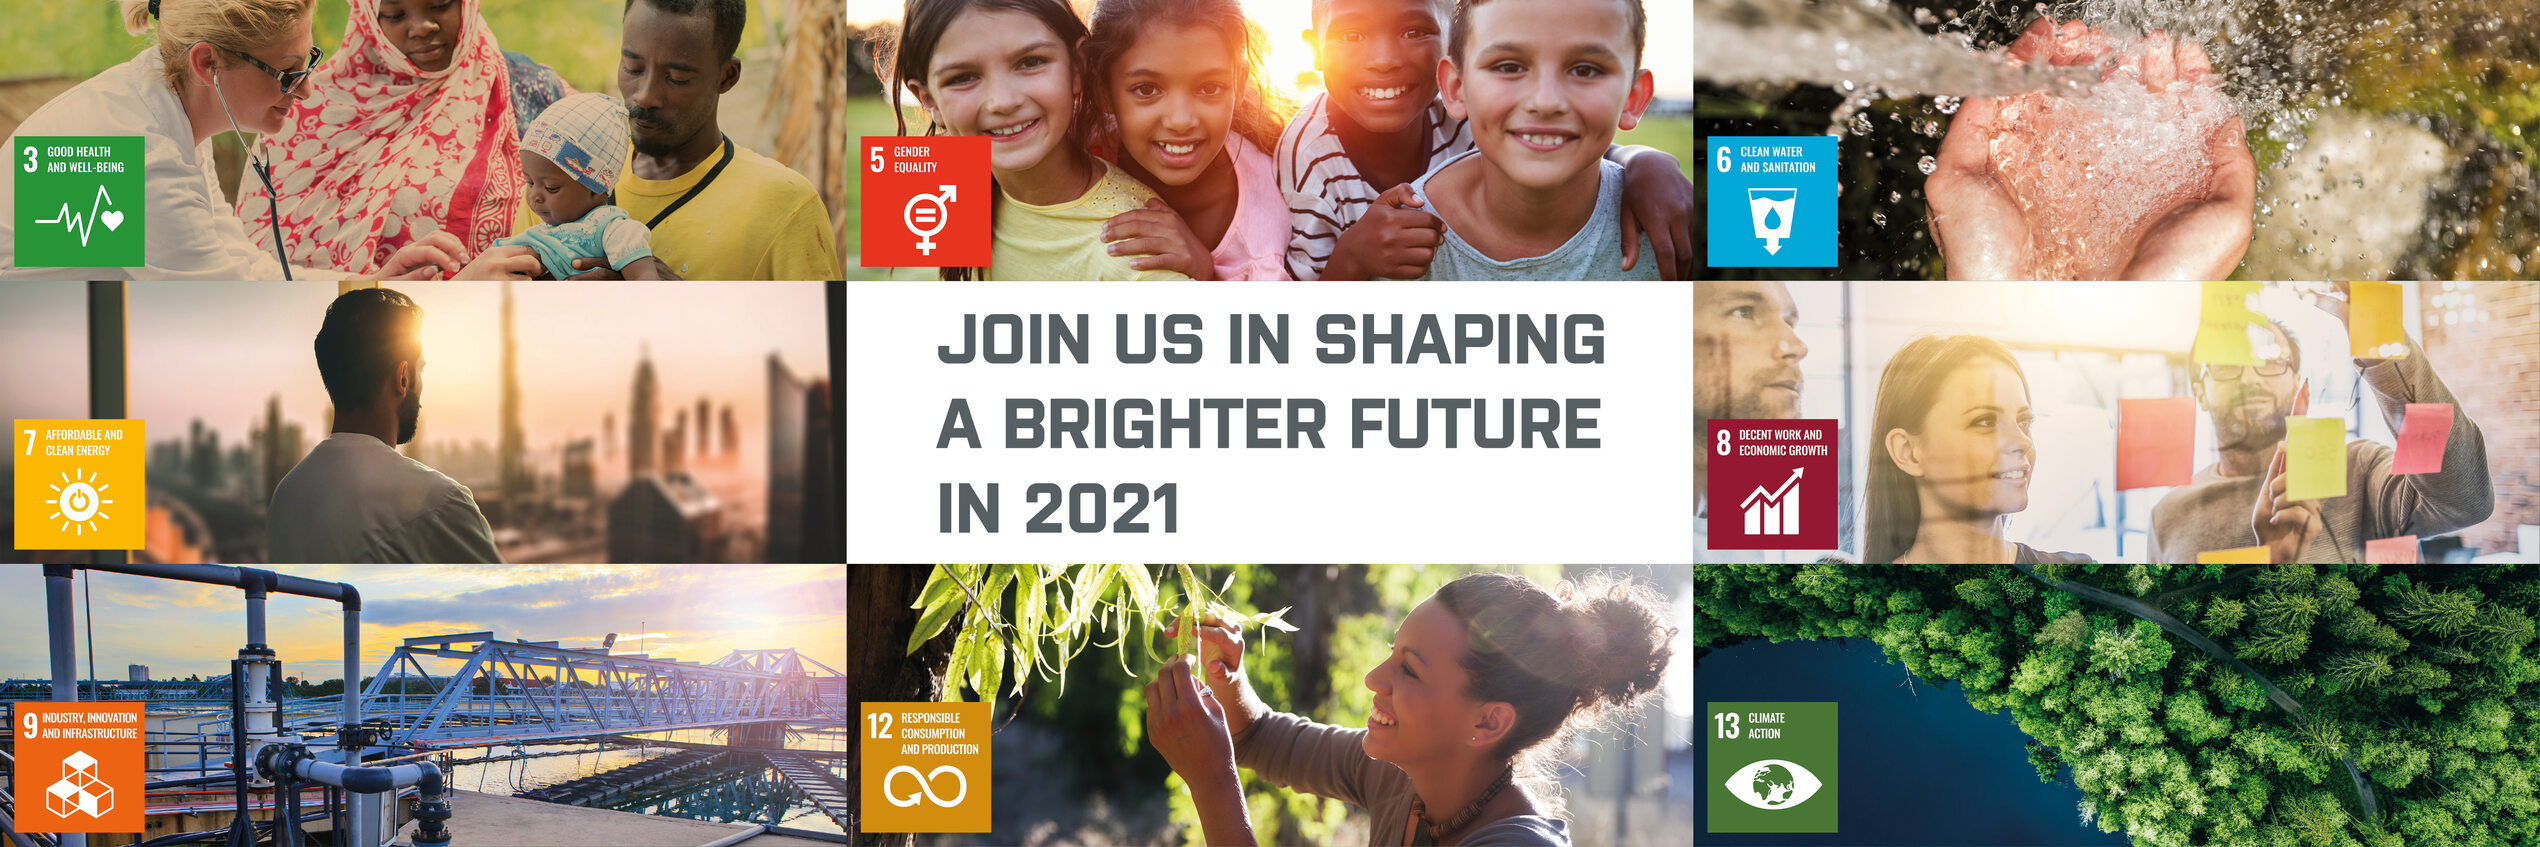 Únase a nosotros para dar forma a un futuro más brillante en 2021